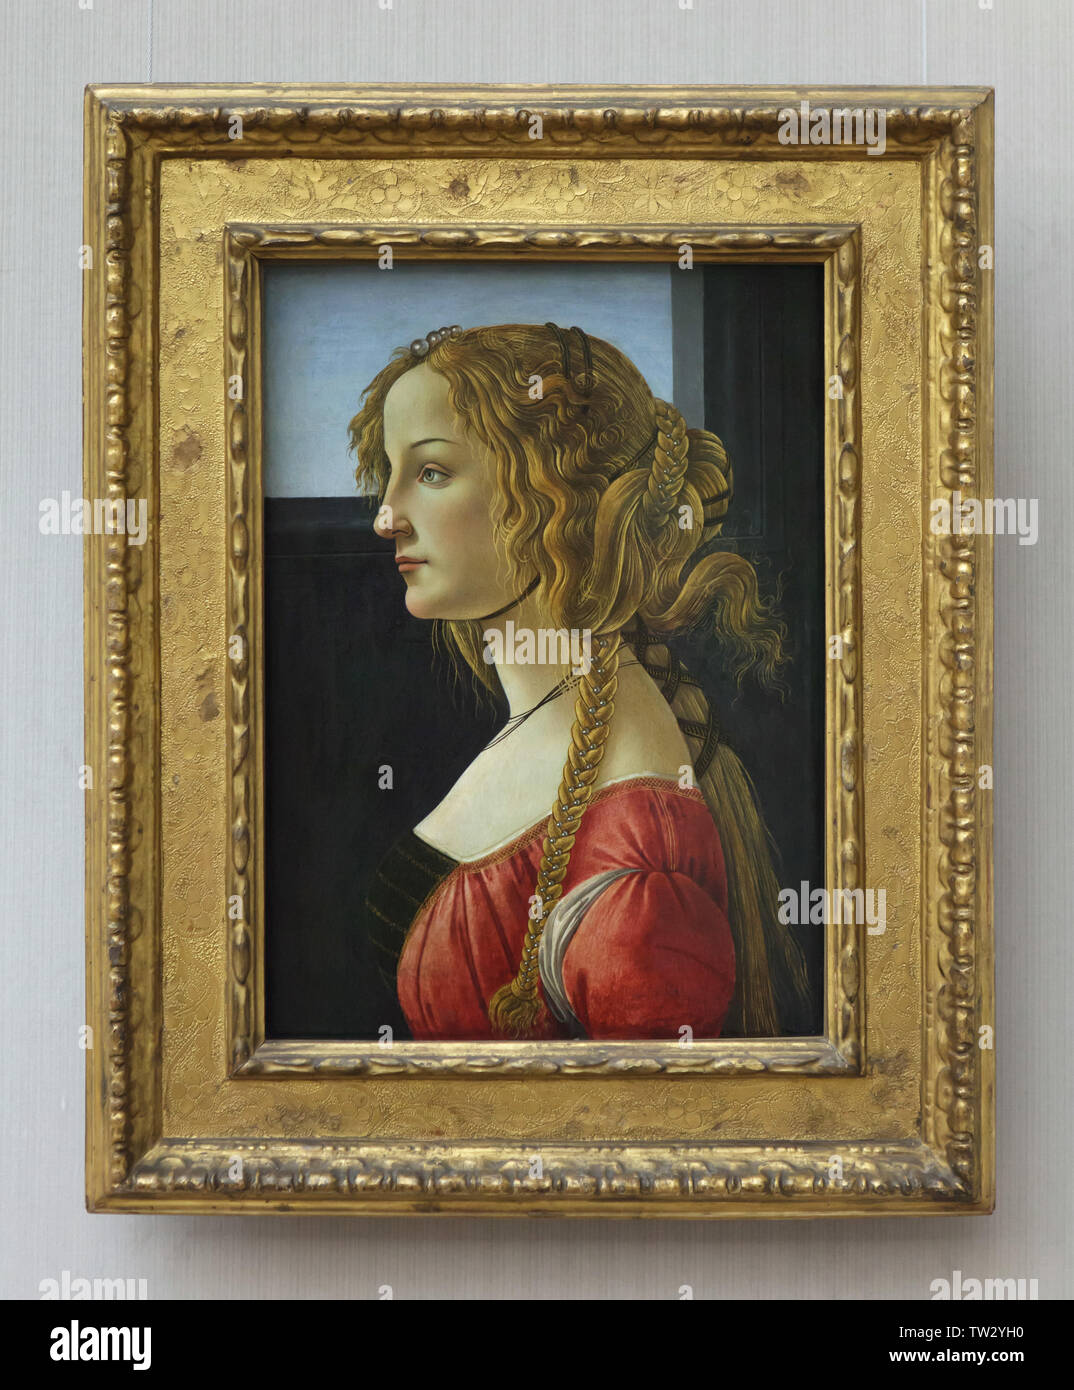 La pintura "Retrato de una mujer joven, probablemente Simonetta Vespucci'  por el pintor renacentista italiano Sandro Botticelli (1460-1464) en la  pantalla en el Berliner Gemäldegalerie (Pinacoteca de Berlín) en Berlín,  Alemania Fotografía